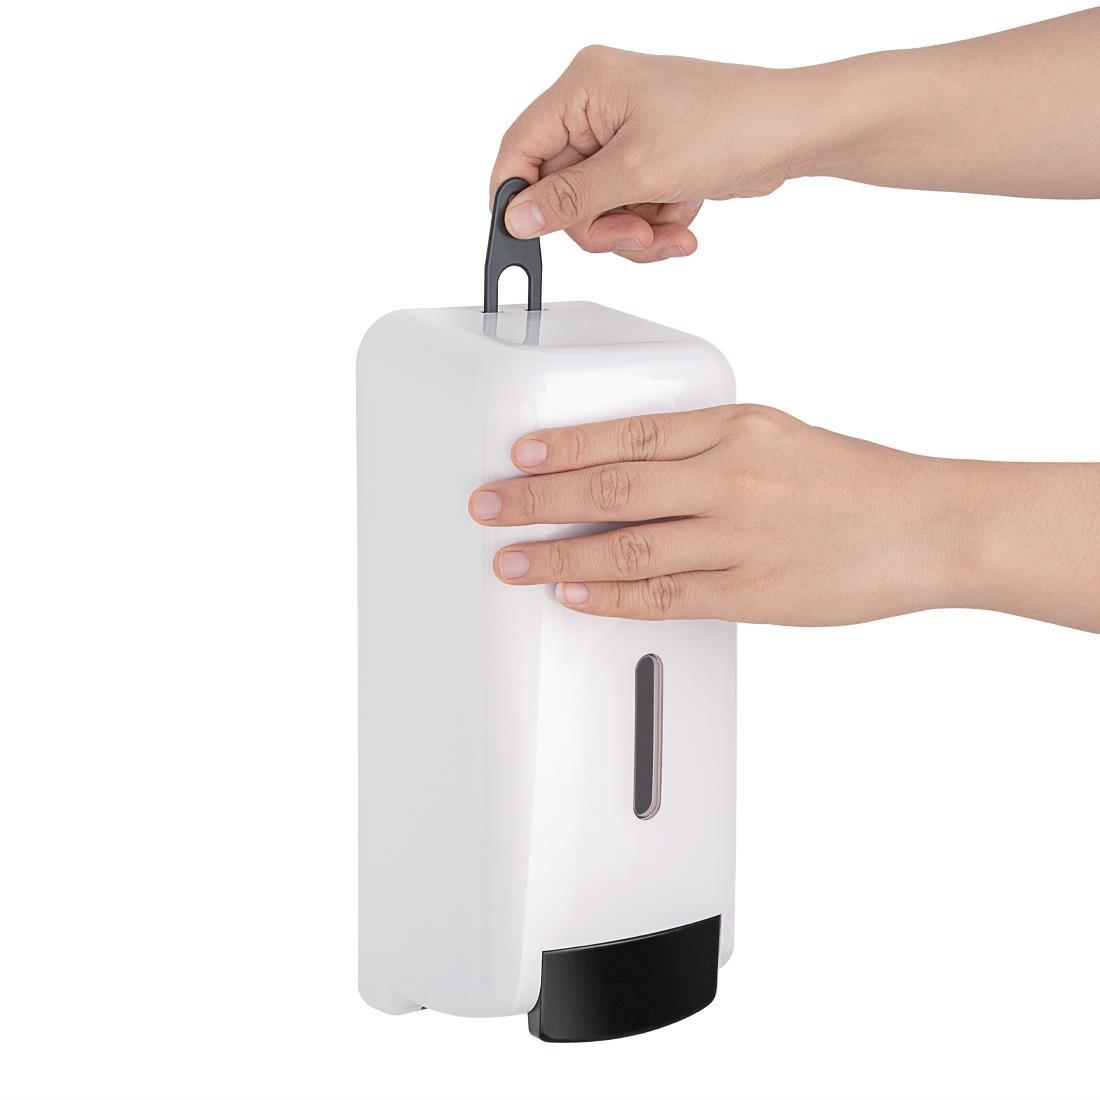 Jantex Liquid Soap and Hand Sanitiser Dispenser 1Ltr - FK385  - 2